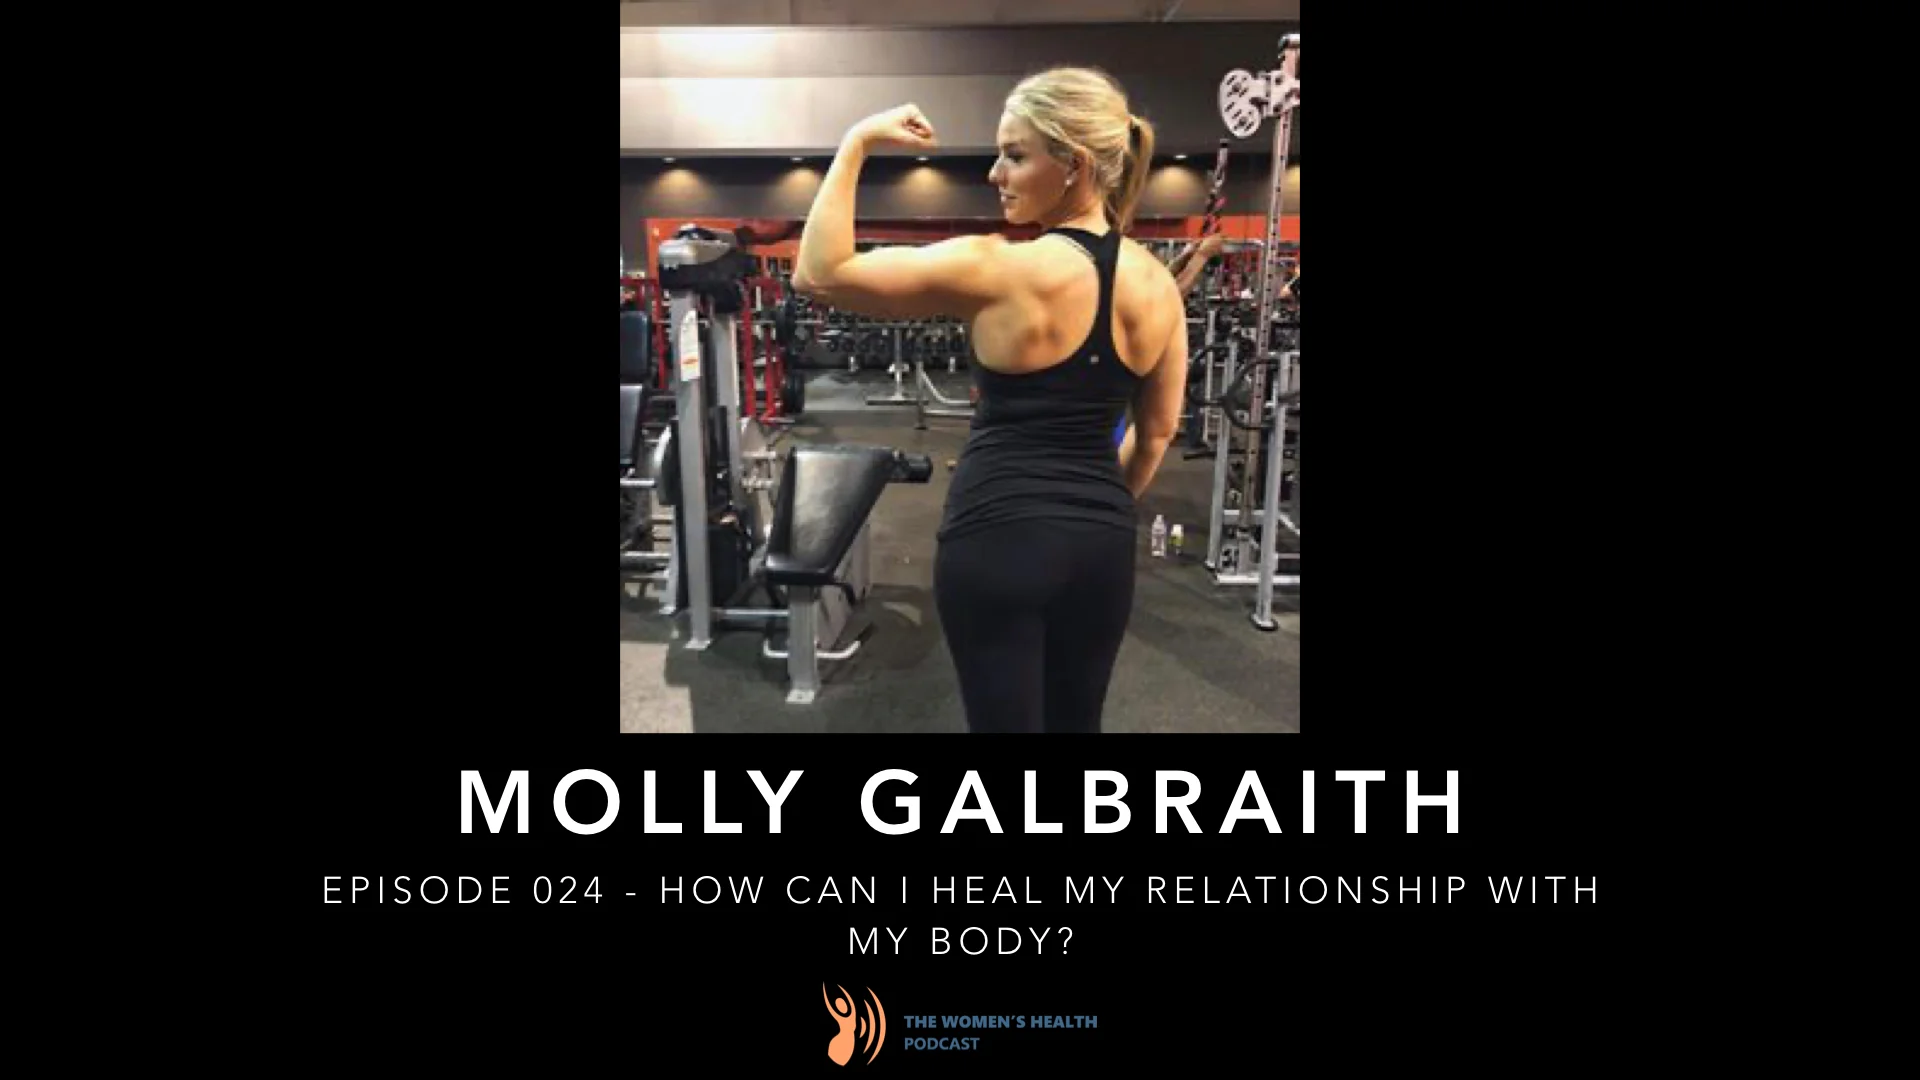 Molly Galbraith